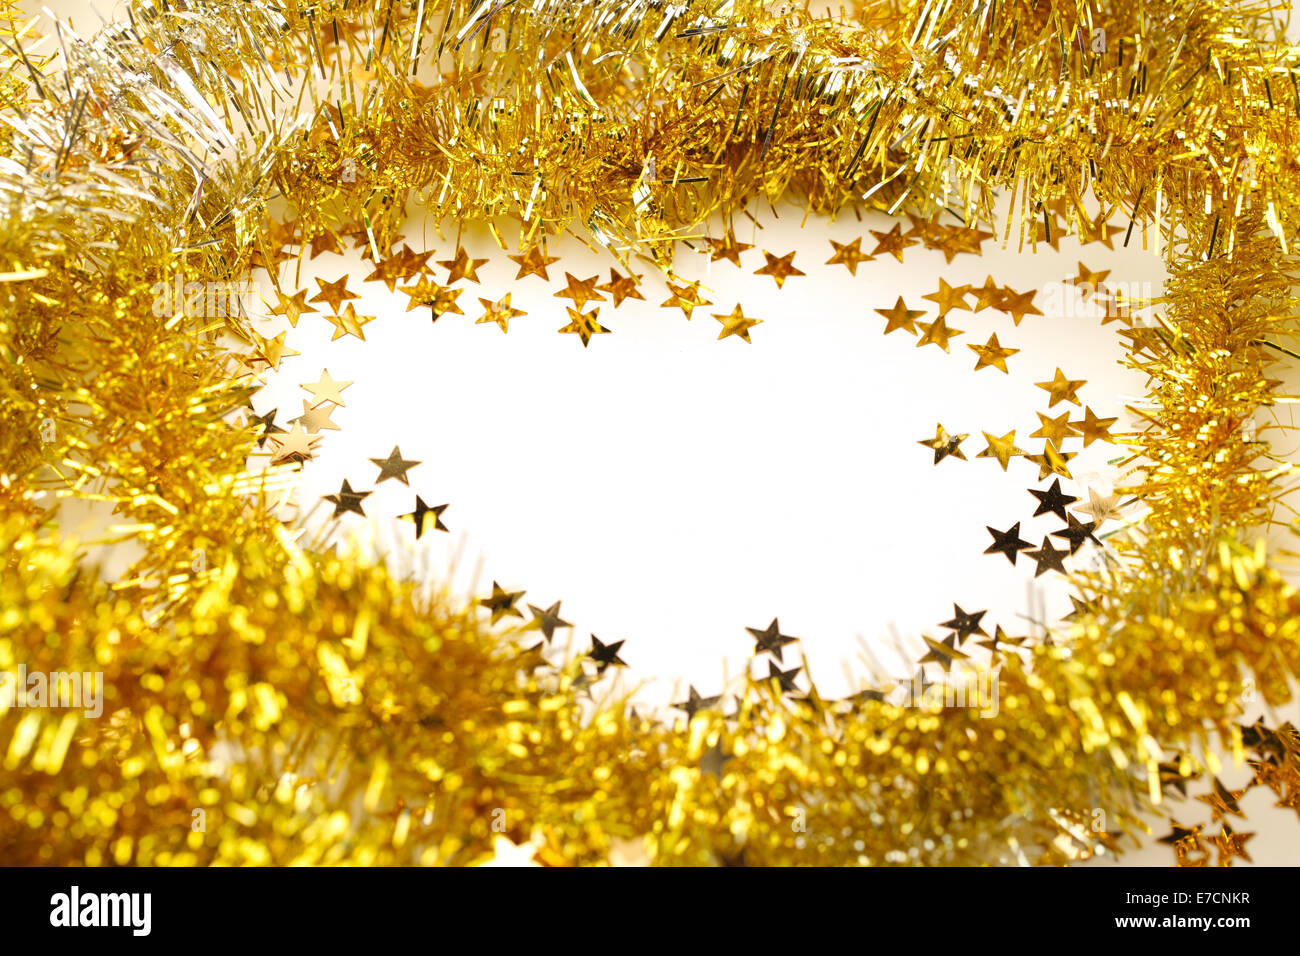 Les guirlandes d'or et star confetti frame garland Banque D'Images